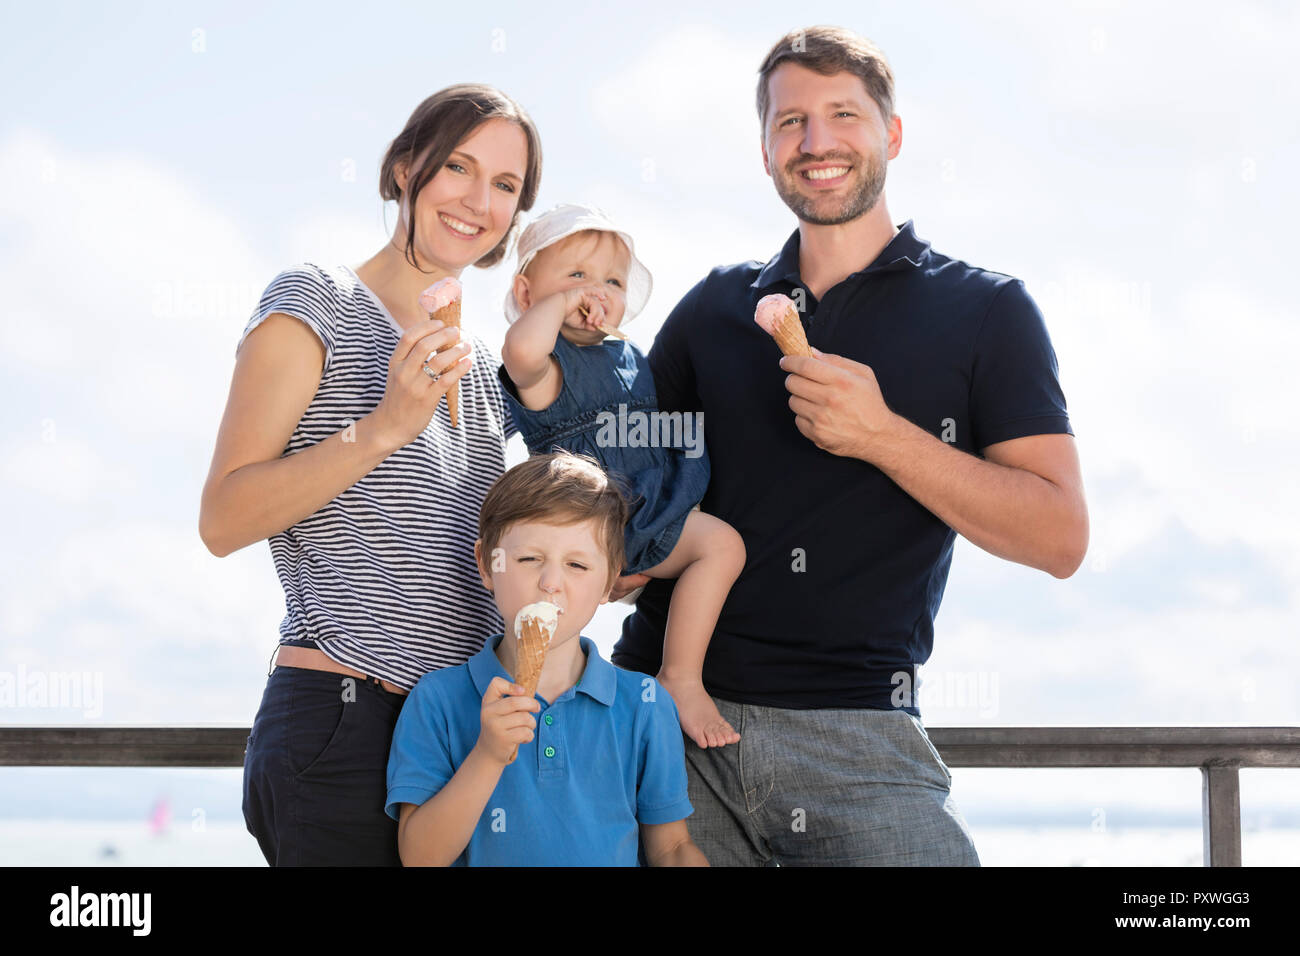 Famille heureuse avec deux enfants eating ice cream Banque D'Images